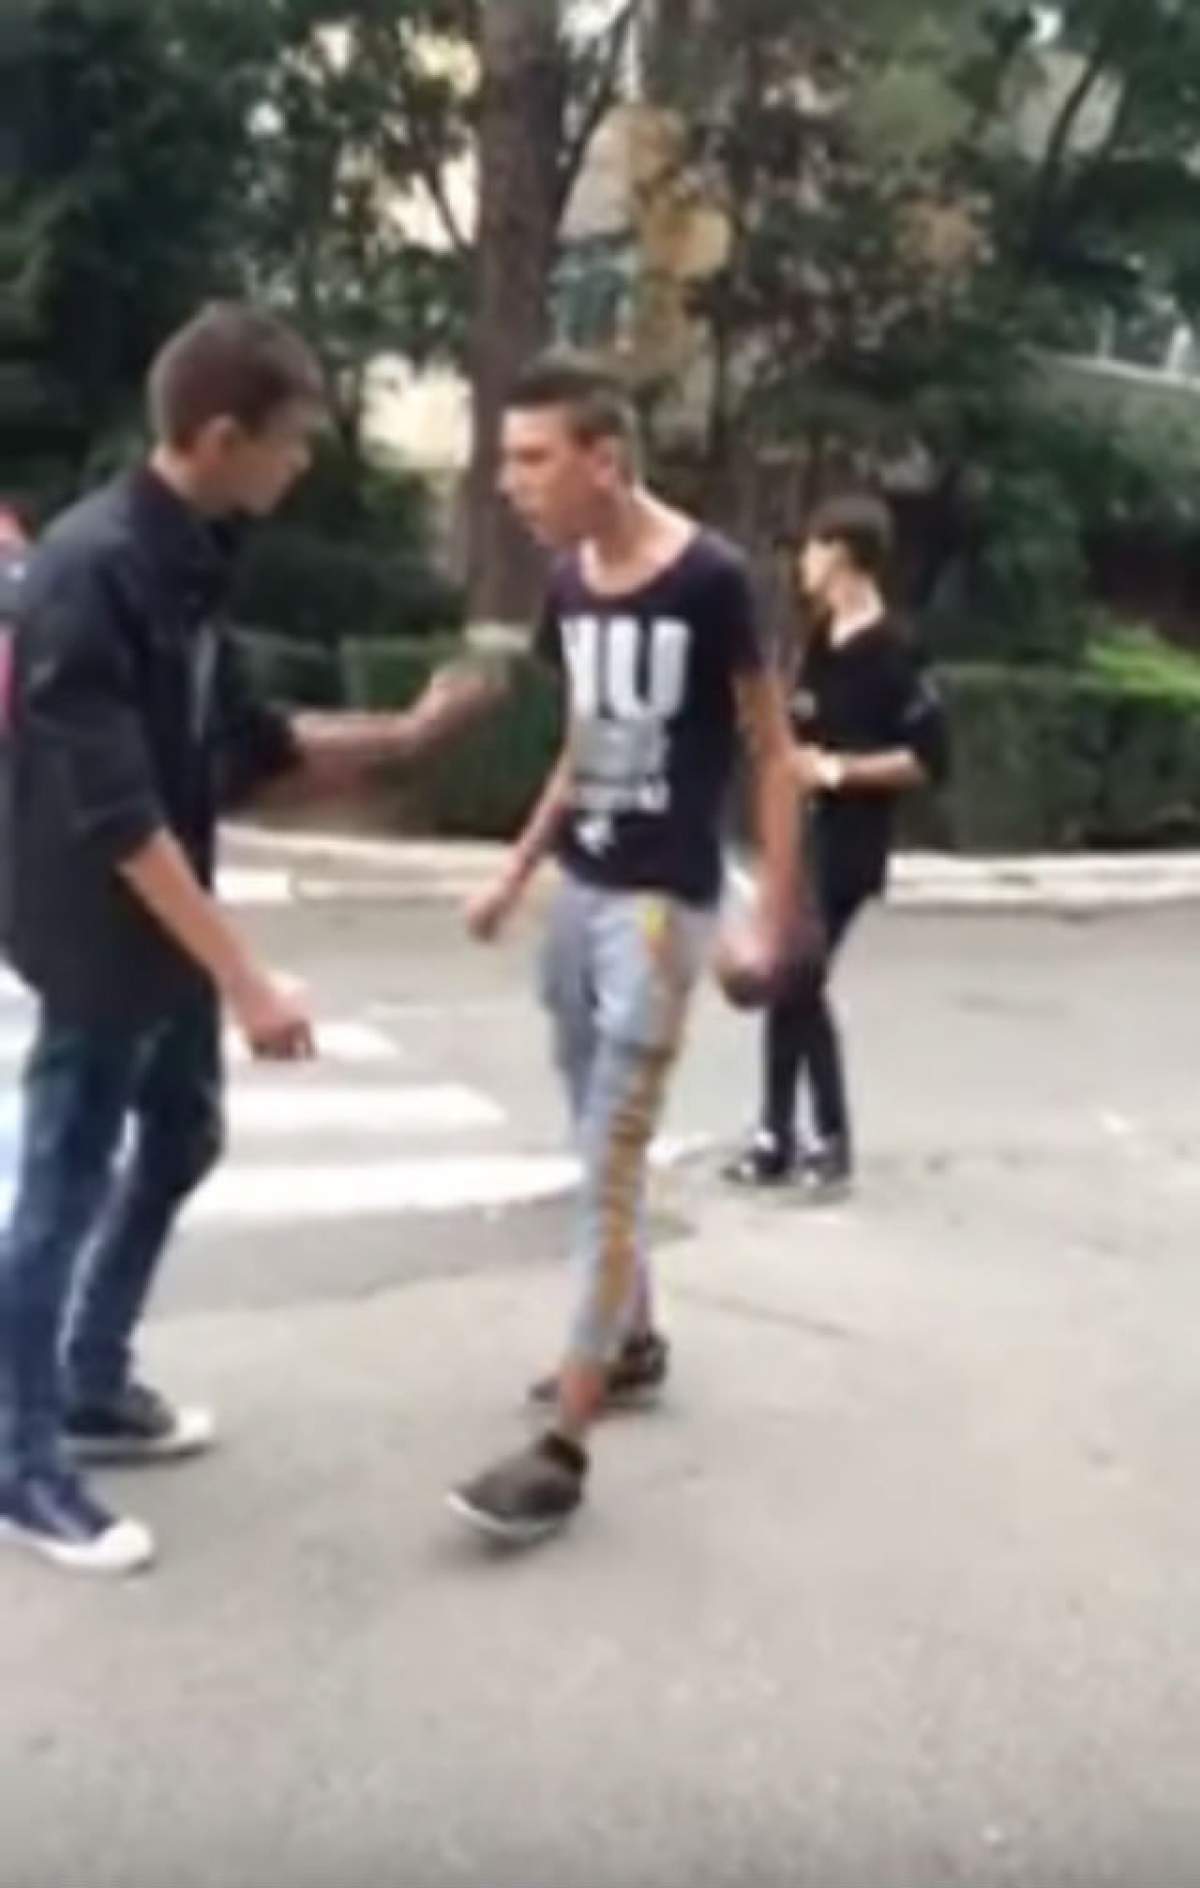 VIDEO / "Trăim în România şi asta ne ocupă tot timpul"! Doi puştani s-au luat la bătaie în plină stradă! Unul a vrut să arate că e şmecher, dar a fugit mâncând pământul